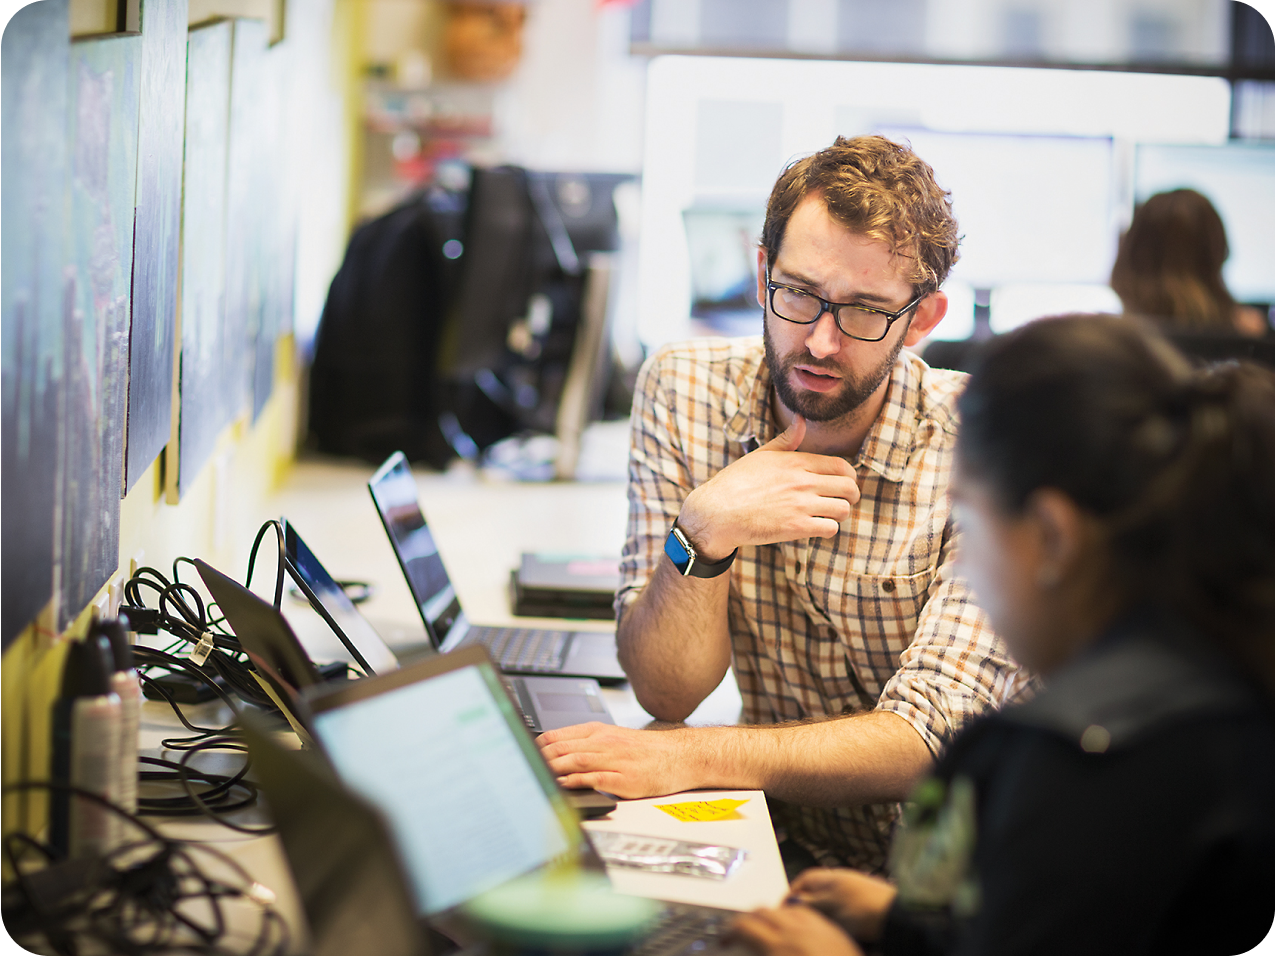 Un homme barbu et portant des lunettes fait des gestes lors d’une discussion avec une collègue, tous deux utilisant des ordinateurs portables dans un environnement de bureau dynamique.